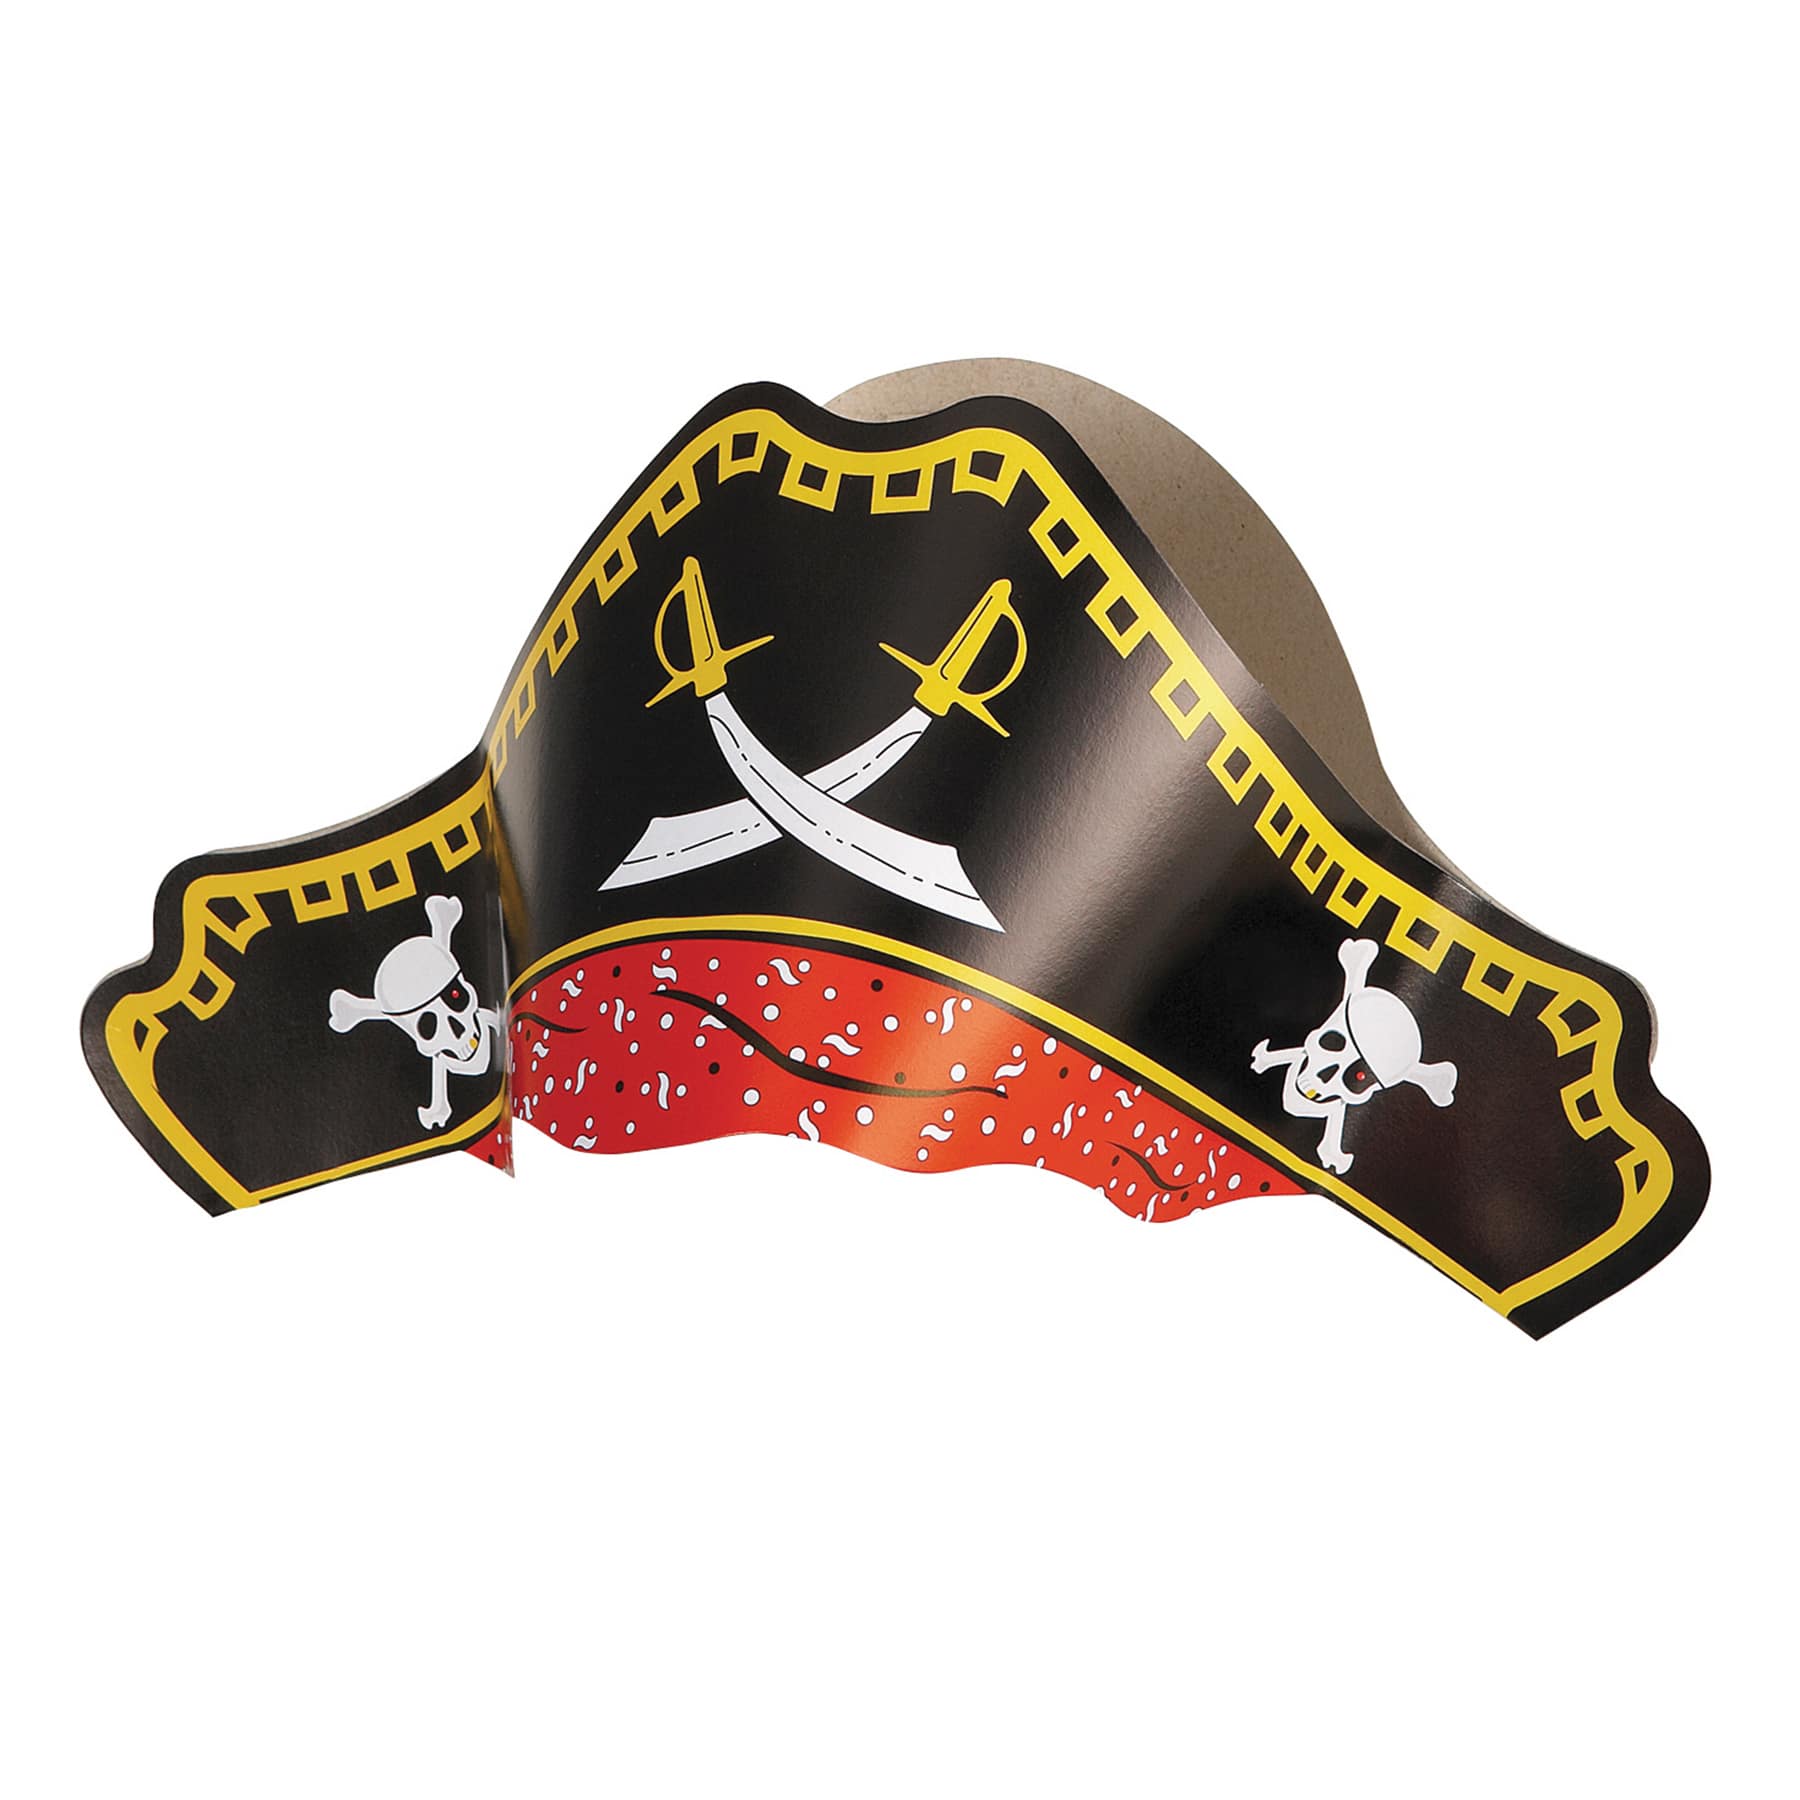 Шляпа пирата. Бумажная Пиратская шляпа. Шляпа пирата из картона. Пиратская шляпа из картона. Макет пиратской шляпы из картона.